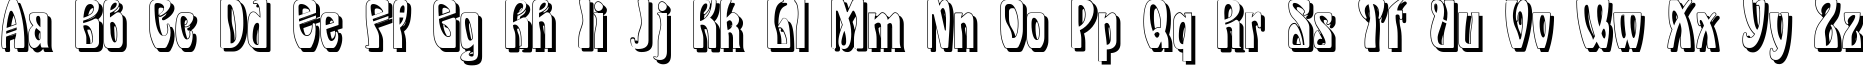 Пример написания английского алфавита шрифтом Epoque Shadow